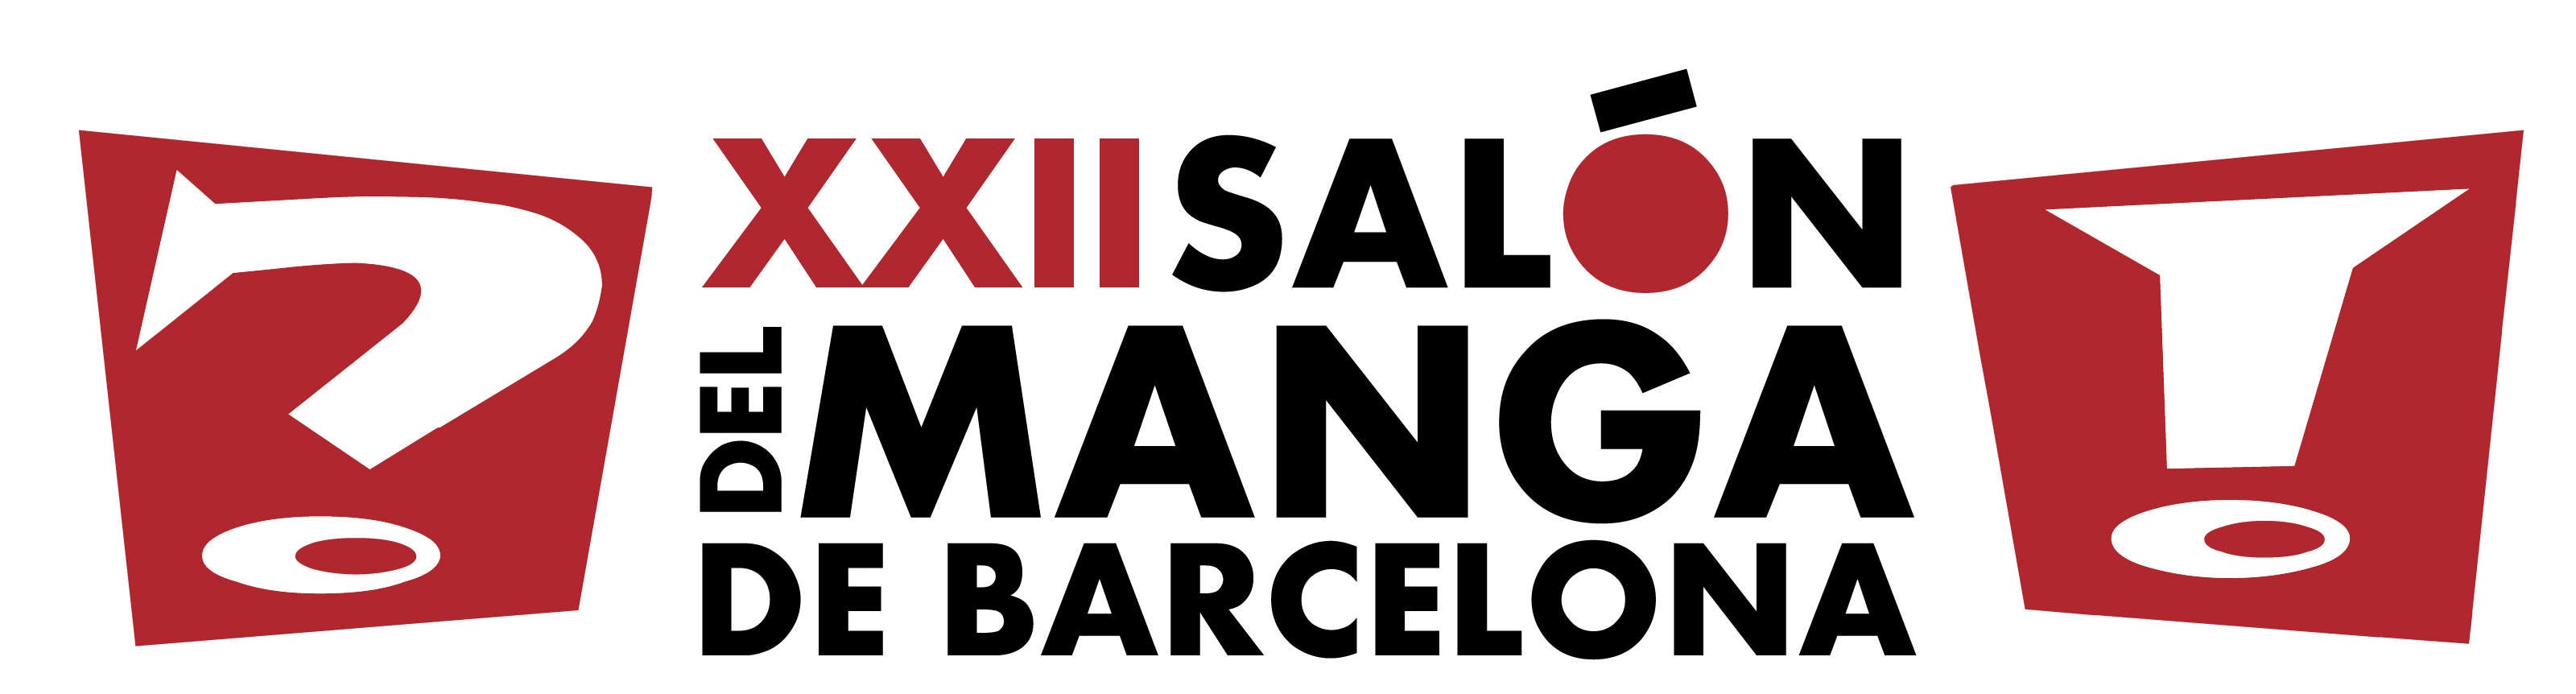 El Salón del Manga de Barcelona crece una vez más, hasta 70.000m2